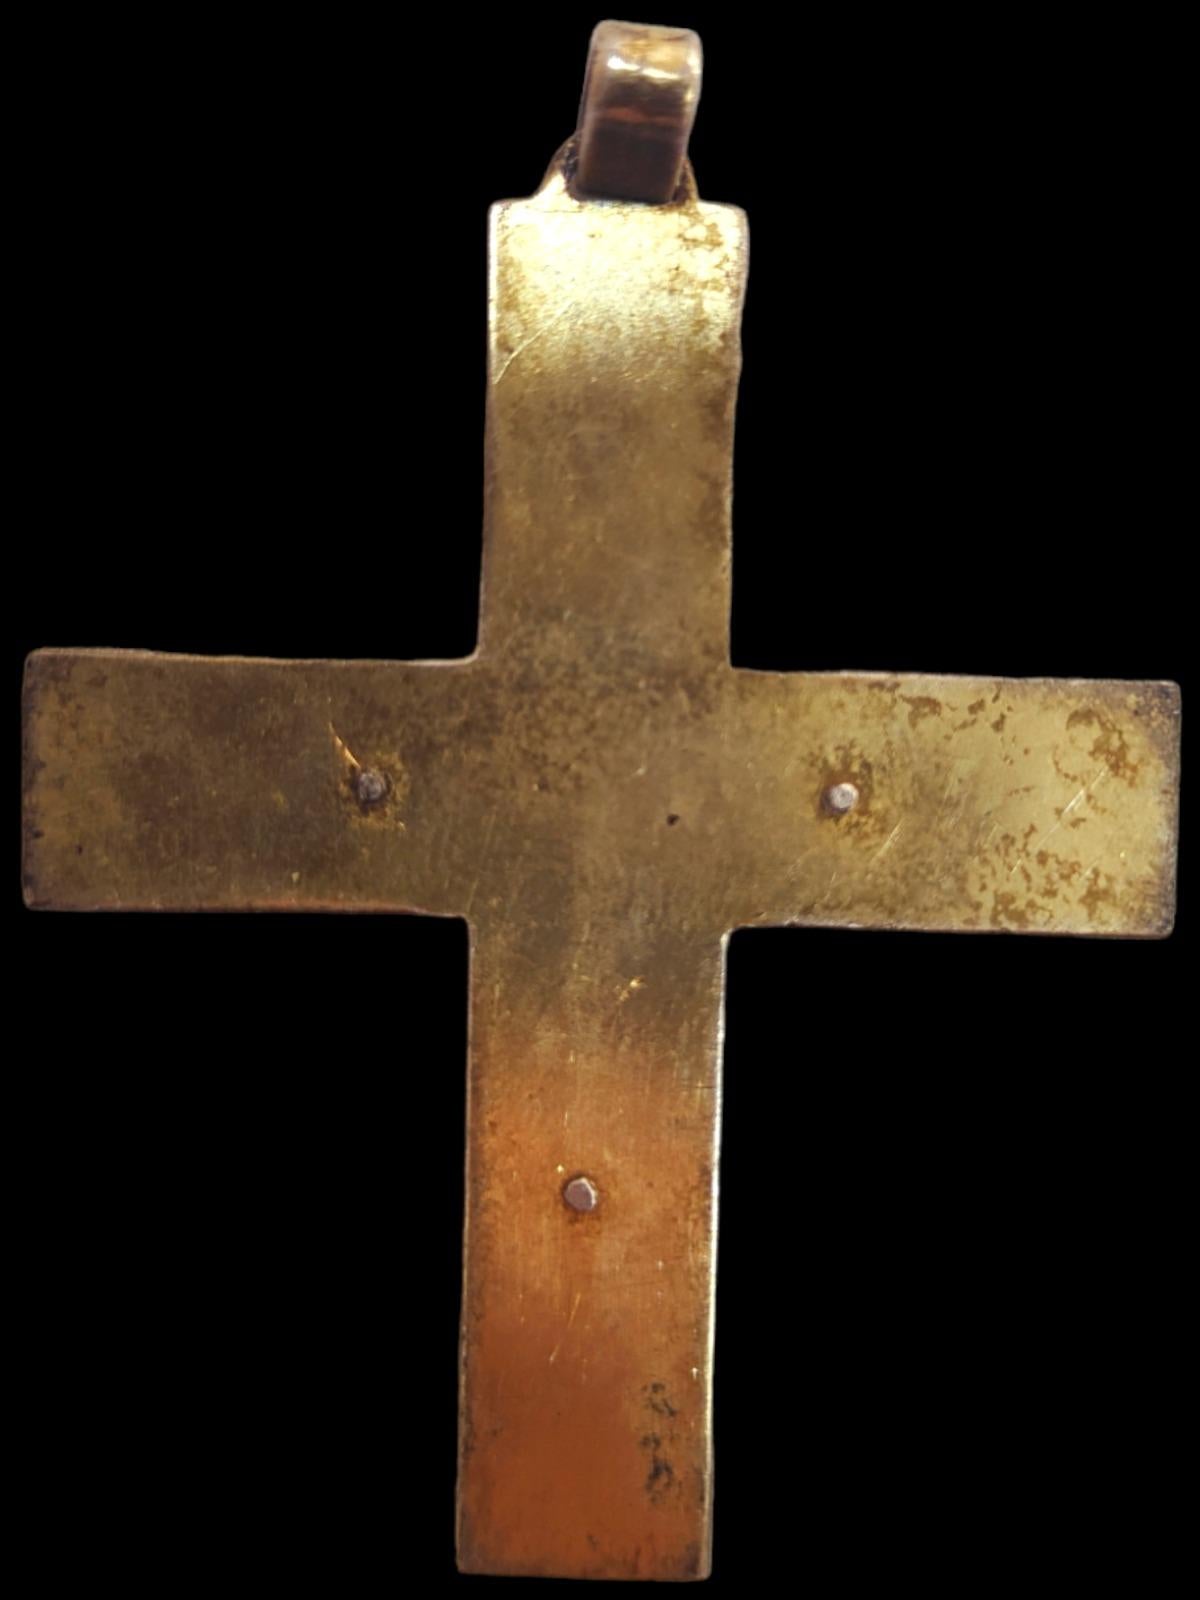 Kreuz aus dem 19. Jahrhundert
Schönes Kreuz aus dem XIX. Jahrhundert aus Olivenholz. Maße: 23 x 12 cm. In gutem Zustand.